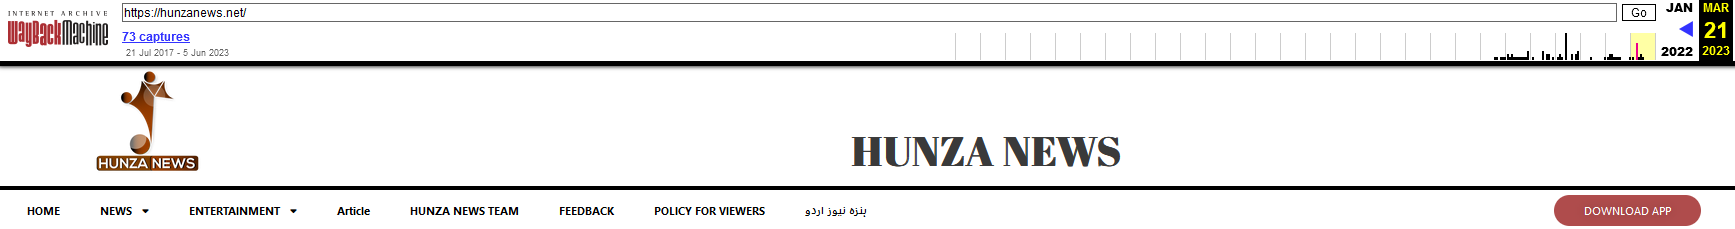 Figuur 5 Hunza News website optie download app hersteld